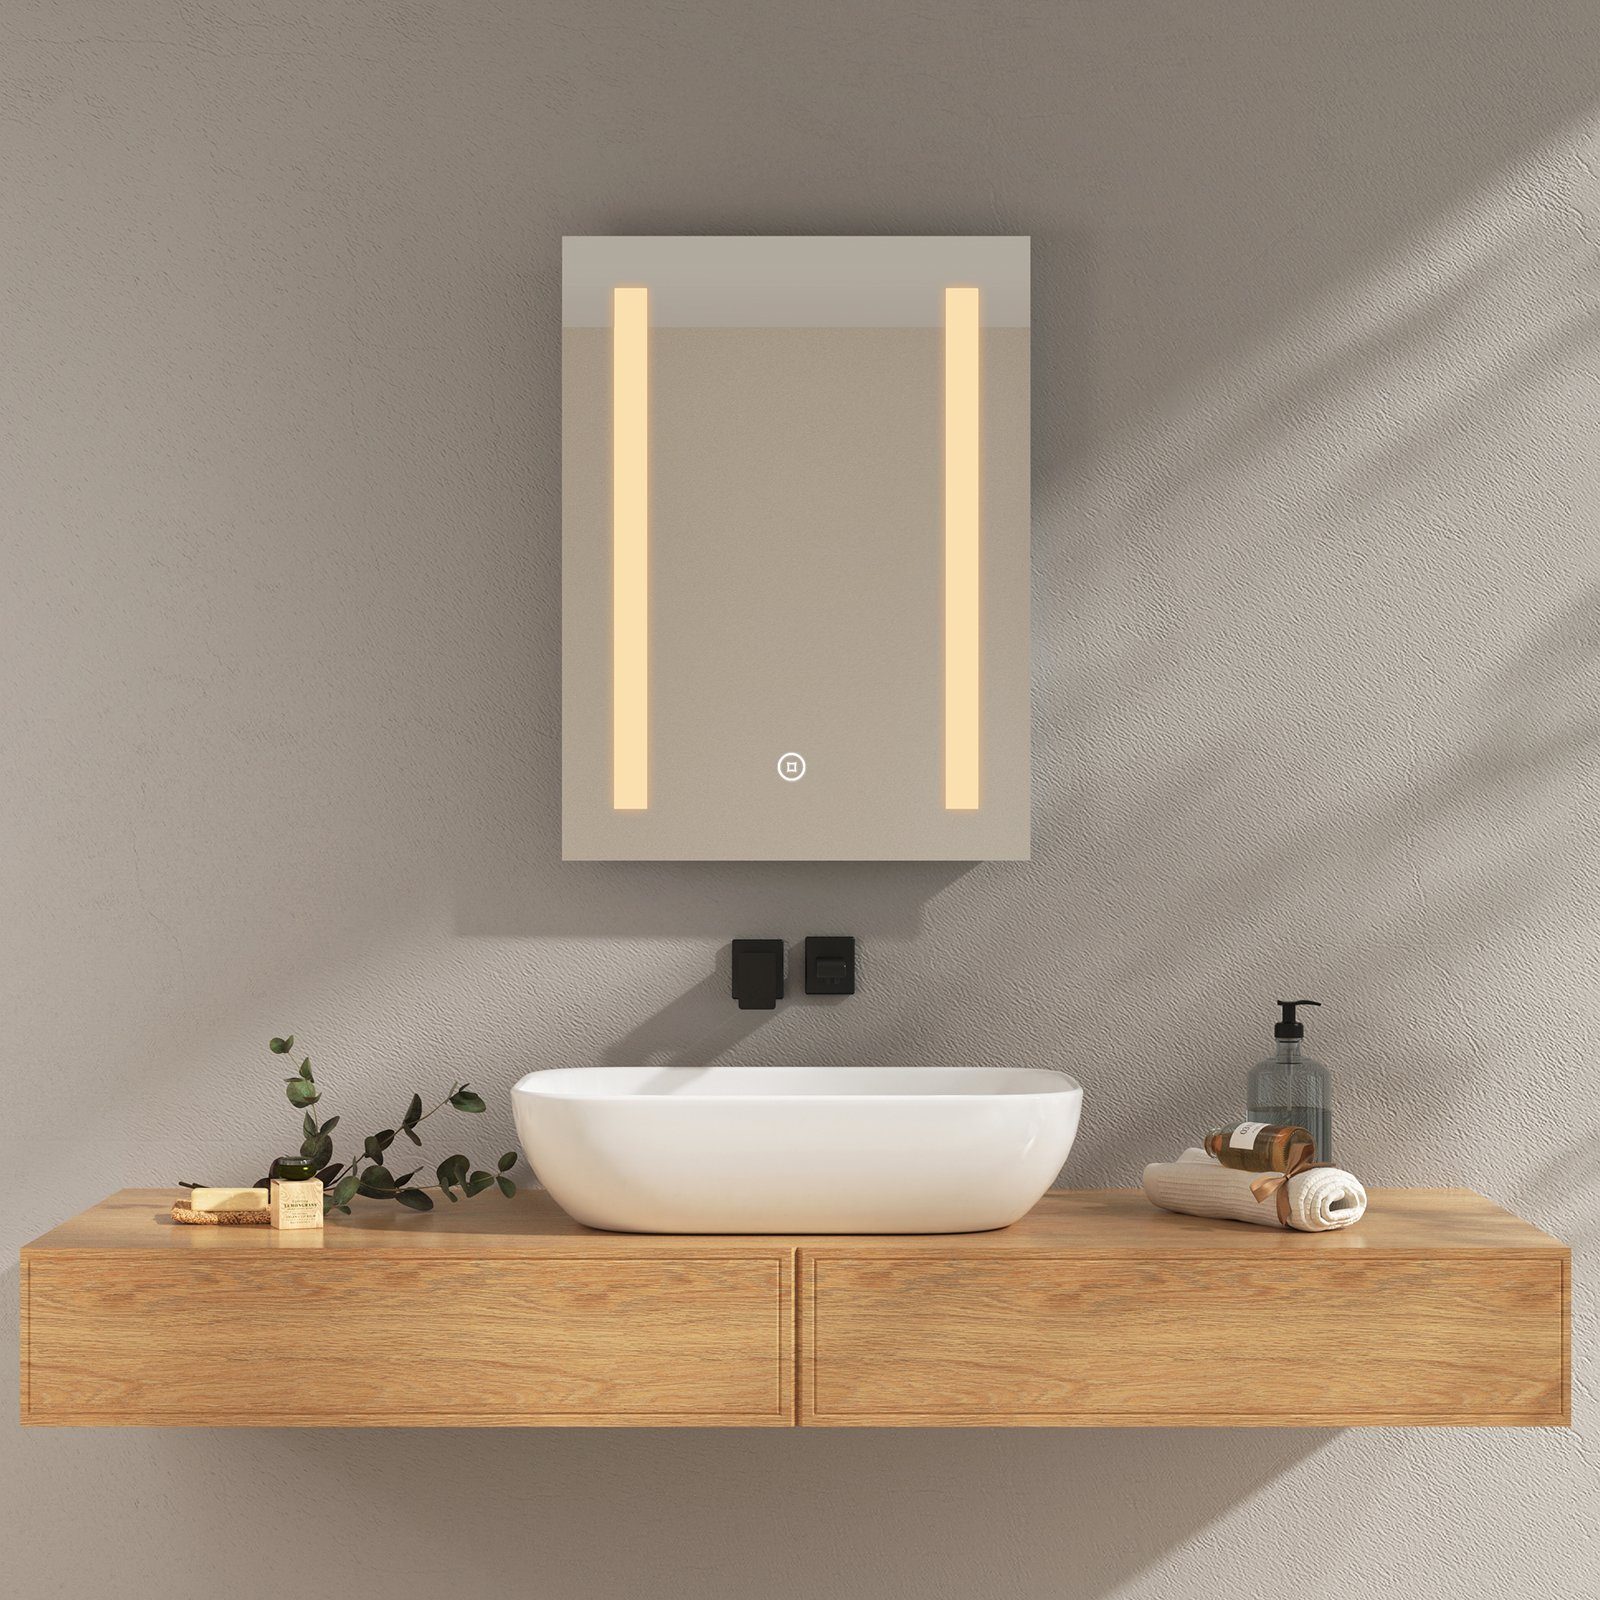 und Lichtspiegel, EMKE Badspiegel Beleuchtung Touch-schalter Beschlagfrei 1 Modell Badezimmerspiegel Badspiegel mit LED und